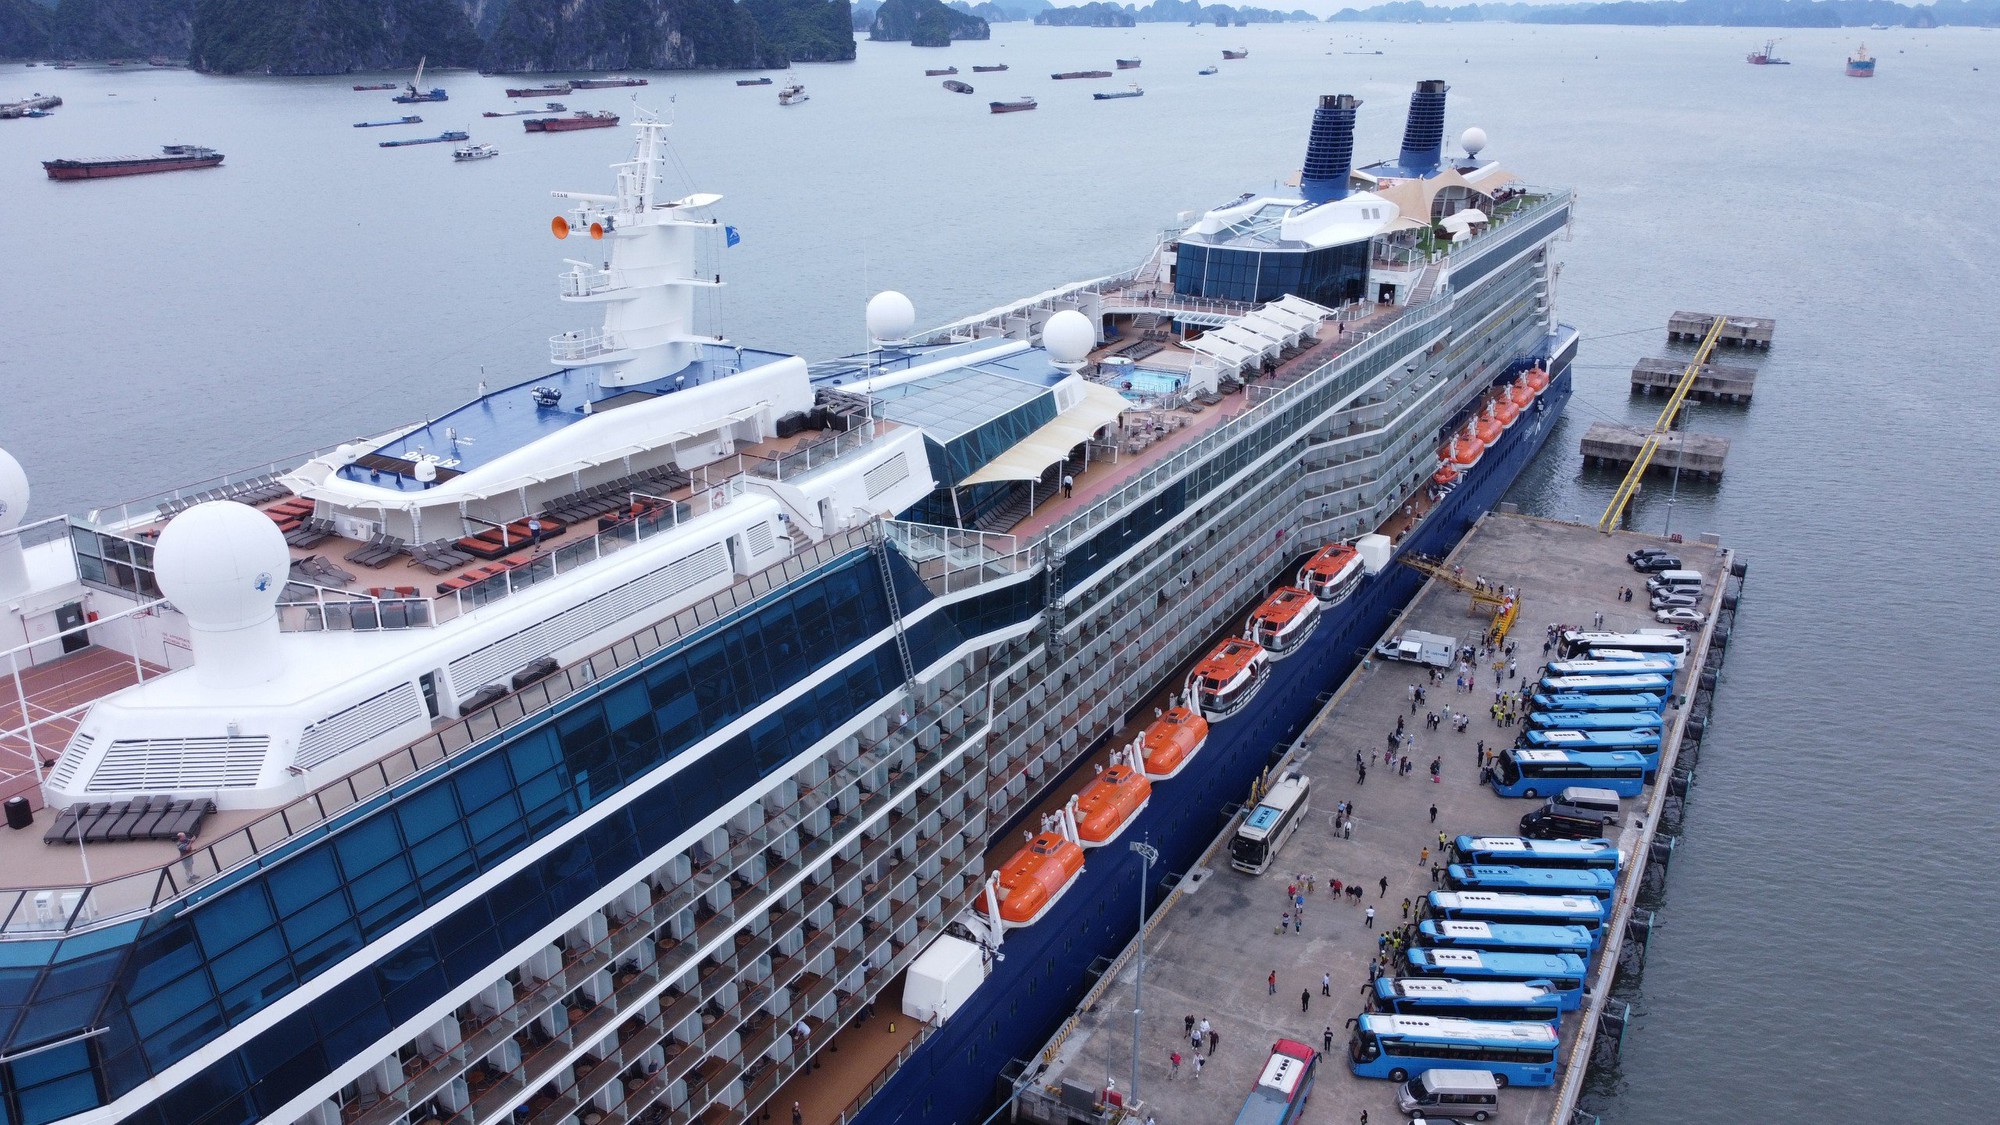 Siêu du thuyền đưa hơn 2.600 khách quốc tế cập Cảng tàu khách quốc tế Hạ Long - Ảnh 1.